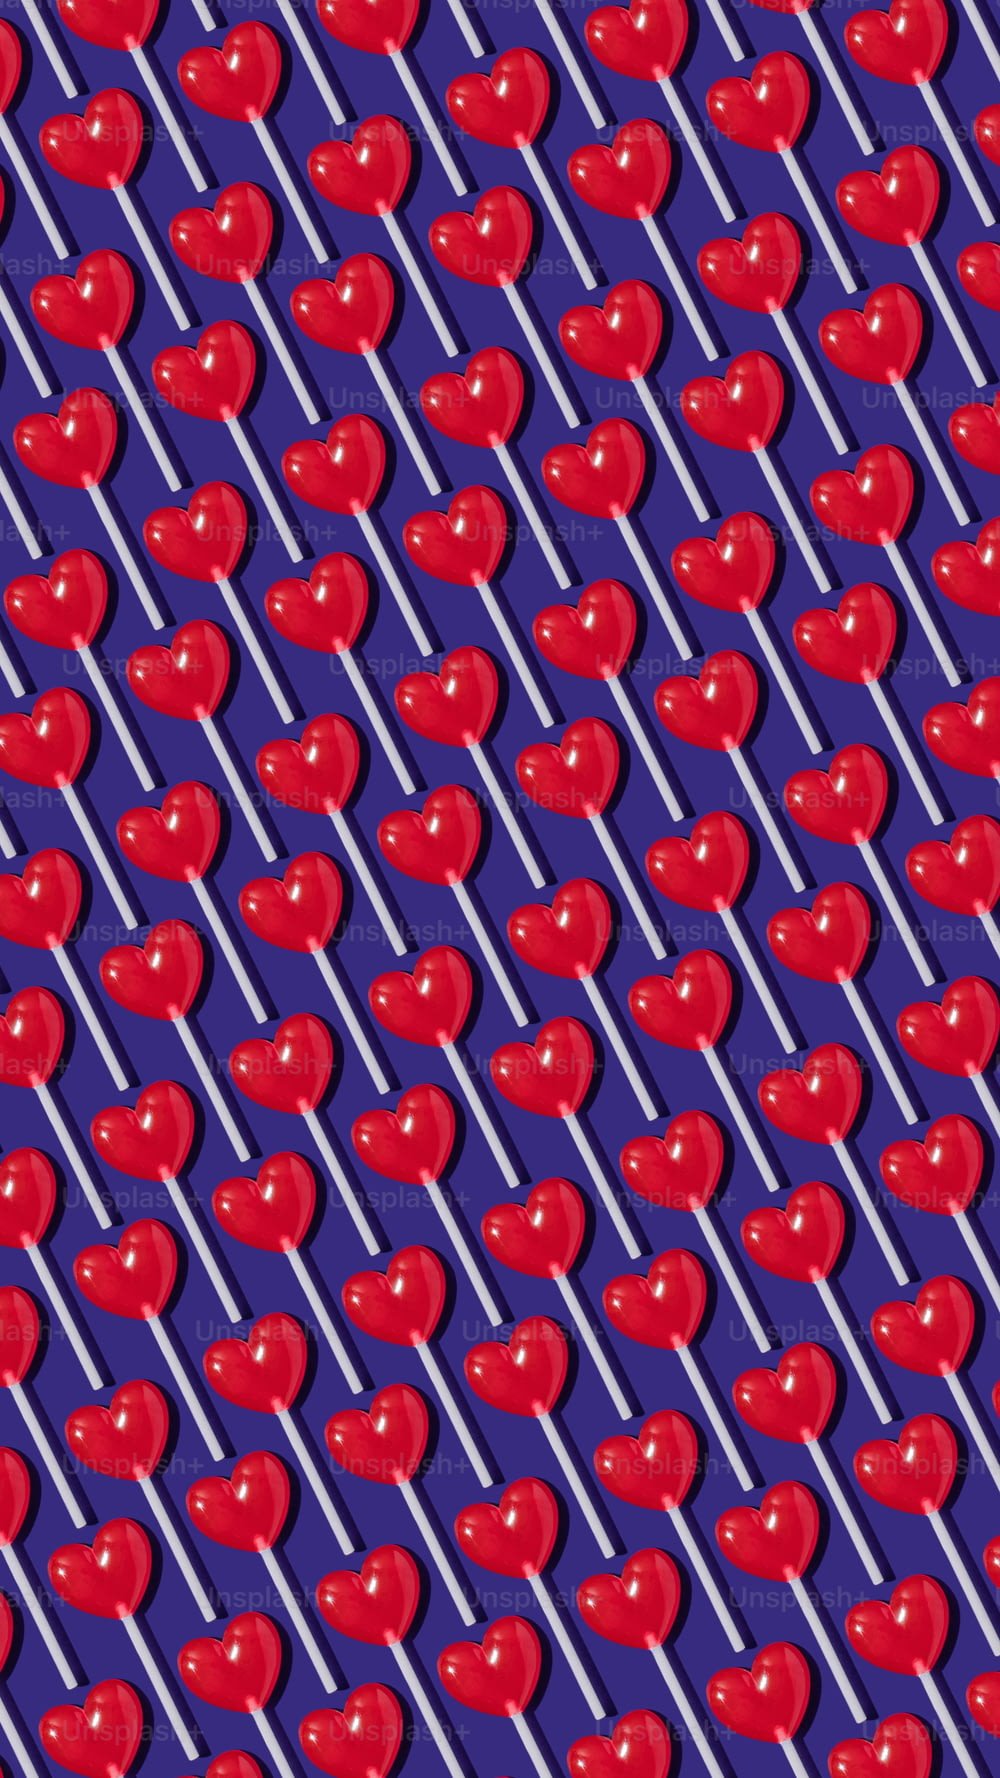 紫色の背景に赤いリンゴのパターン